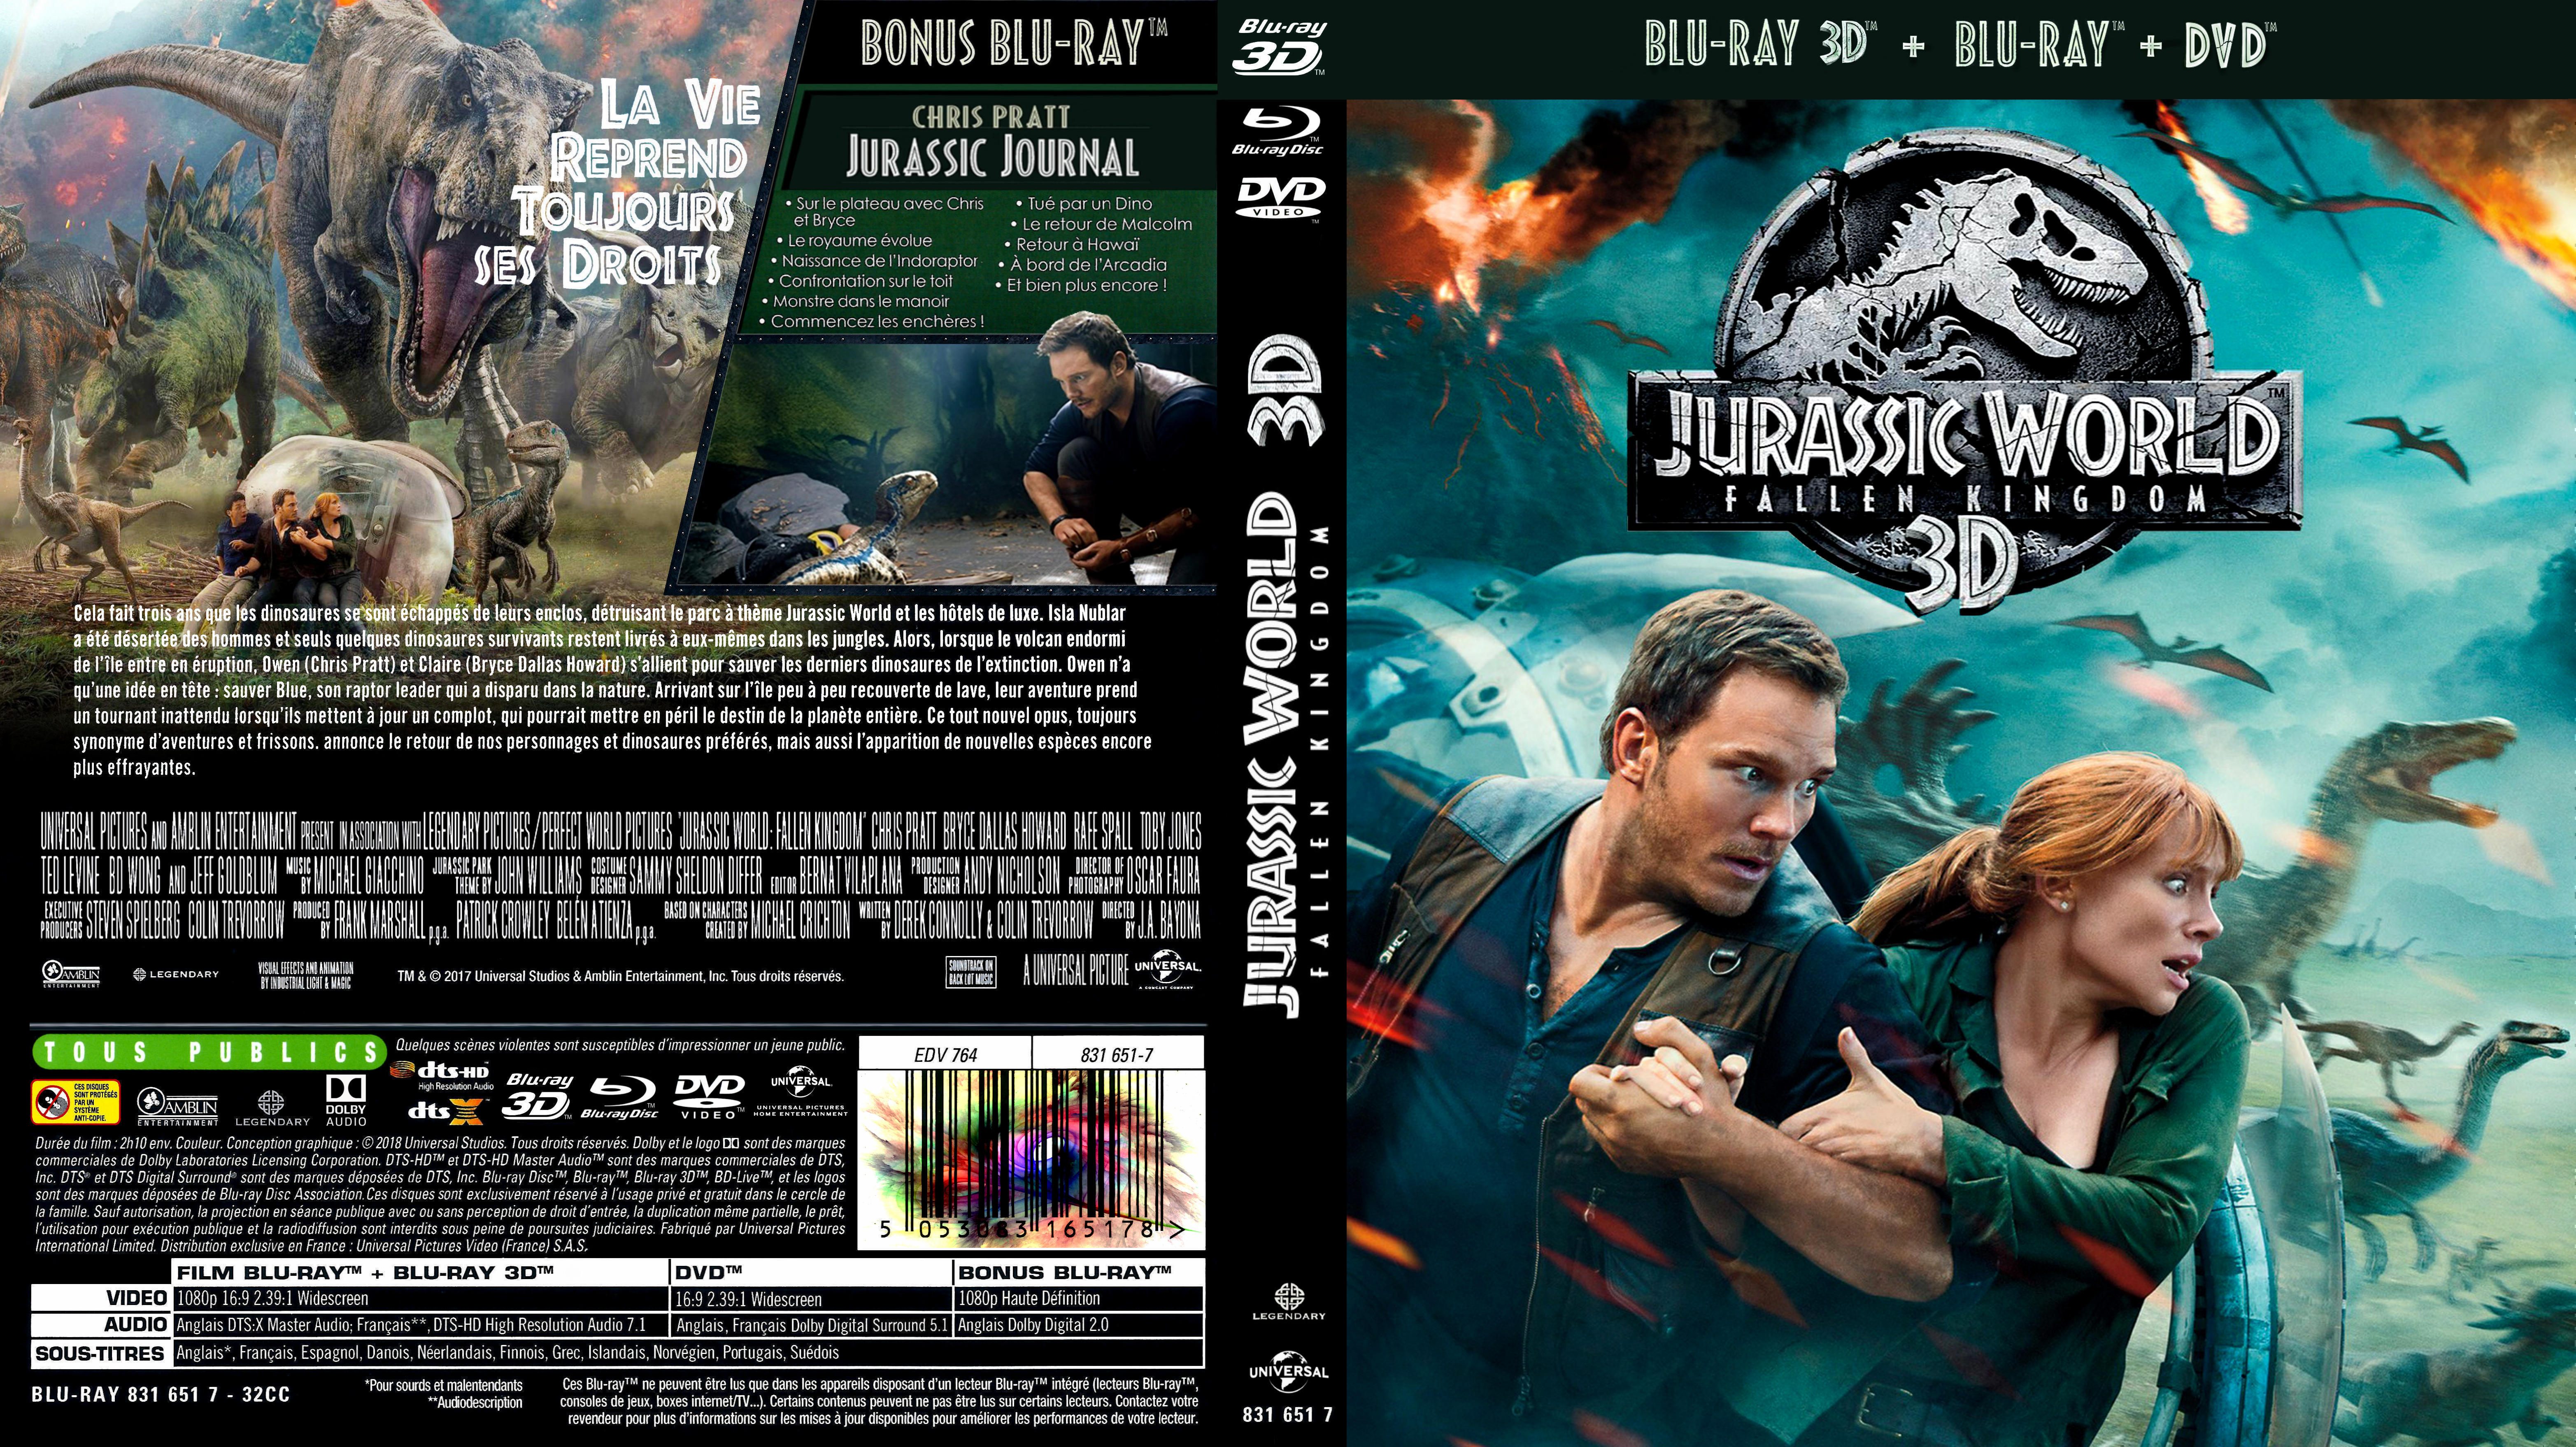 Jaquette DVD Jurassic World fallen kingdom 3D (BLU-RAY)